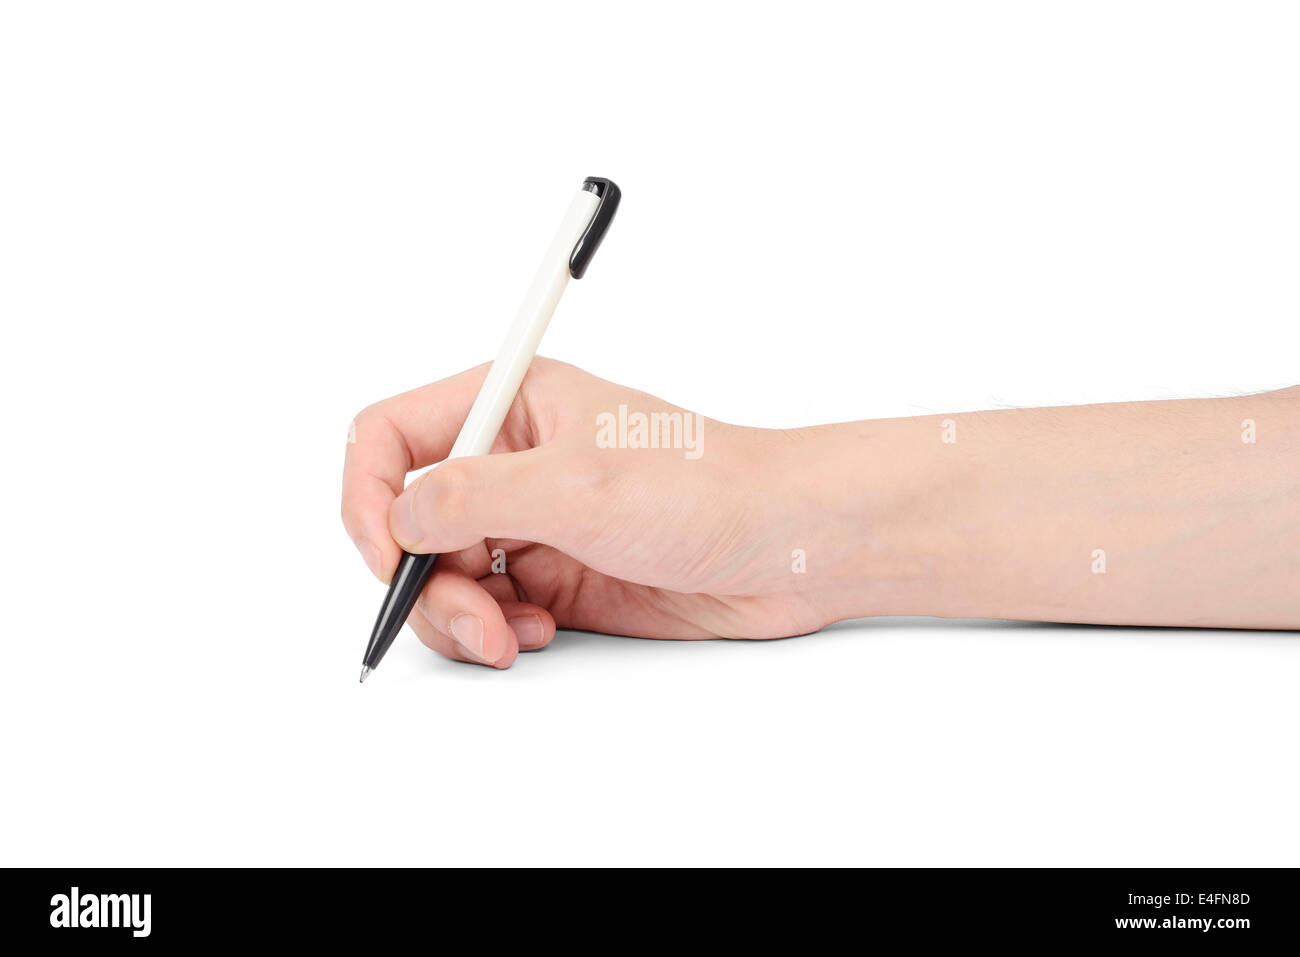 ballpoint pen on asian man's hand, isolated on white Stock Photo